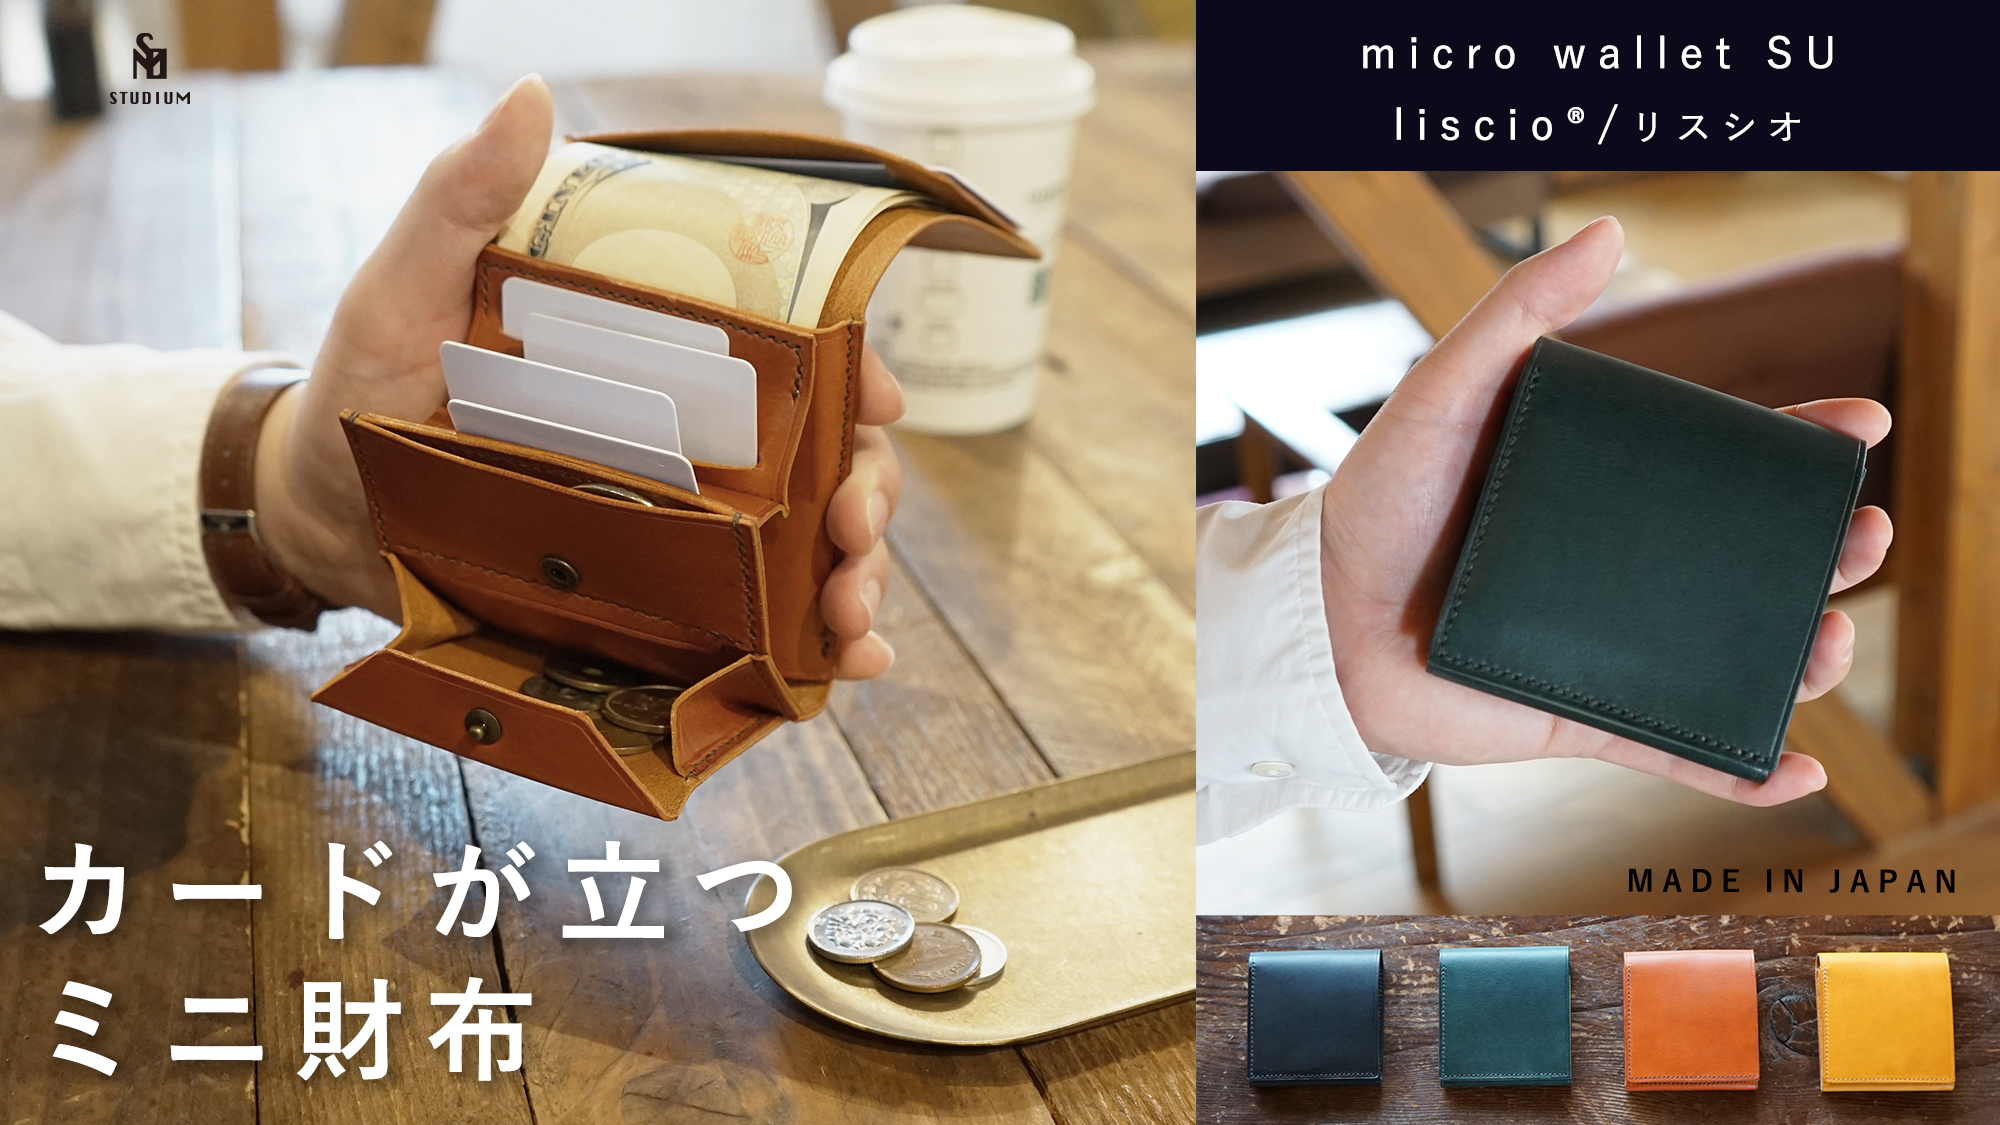 カードが立つミニ財布『マイクロウォレットSU liscio®︎』Makuake(マクアケ）にて数量限定 先行予約販売開始しました！